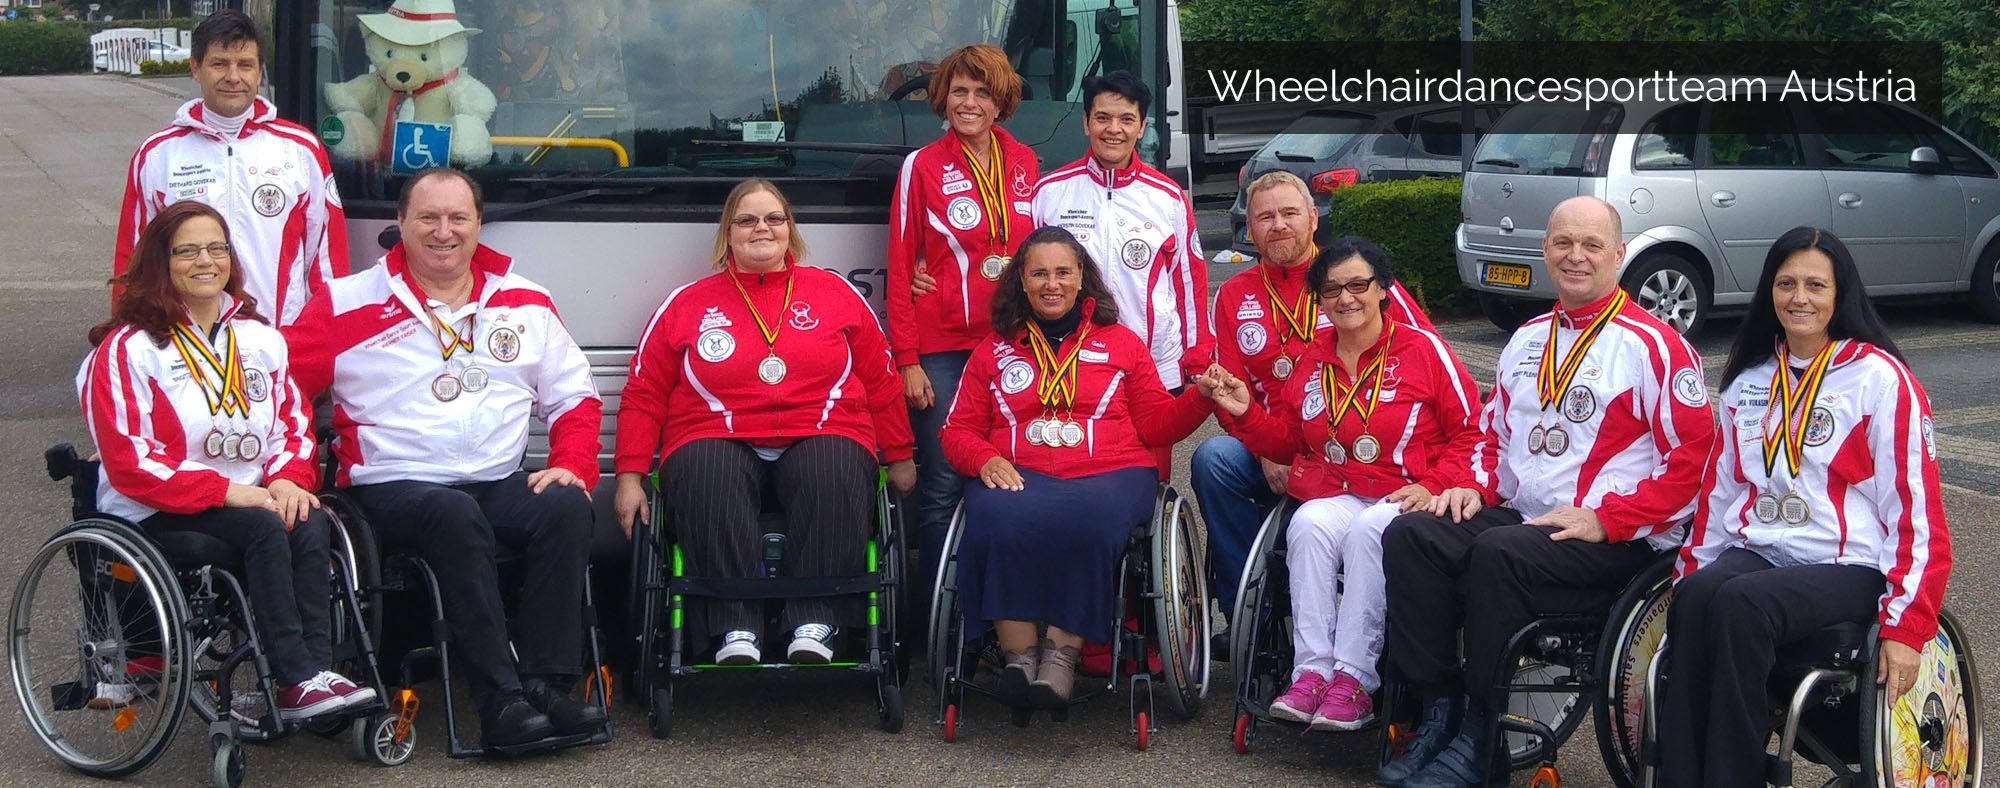 Wheelchairdancesportteam Austria - Rollstuhltanzsport-Nationalteam